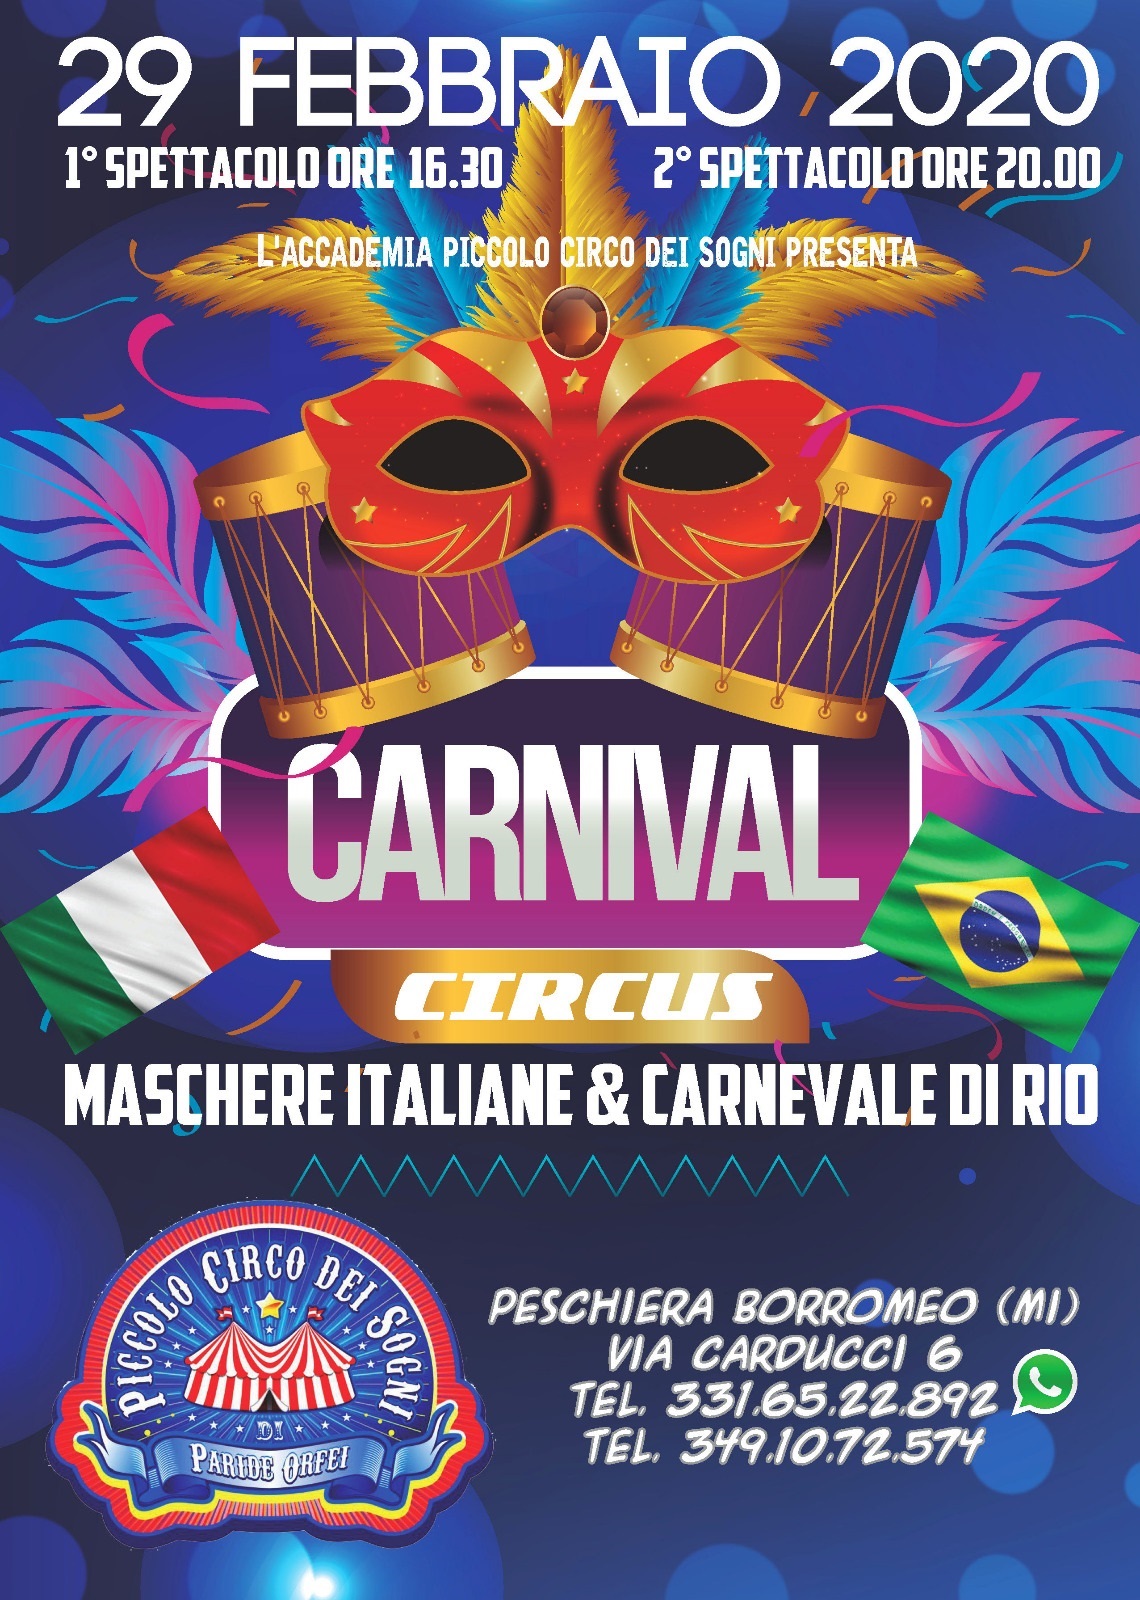 Carnival circus 2020 - maschere italiane & carnevale di rio a Peschiera Borromeo